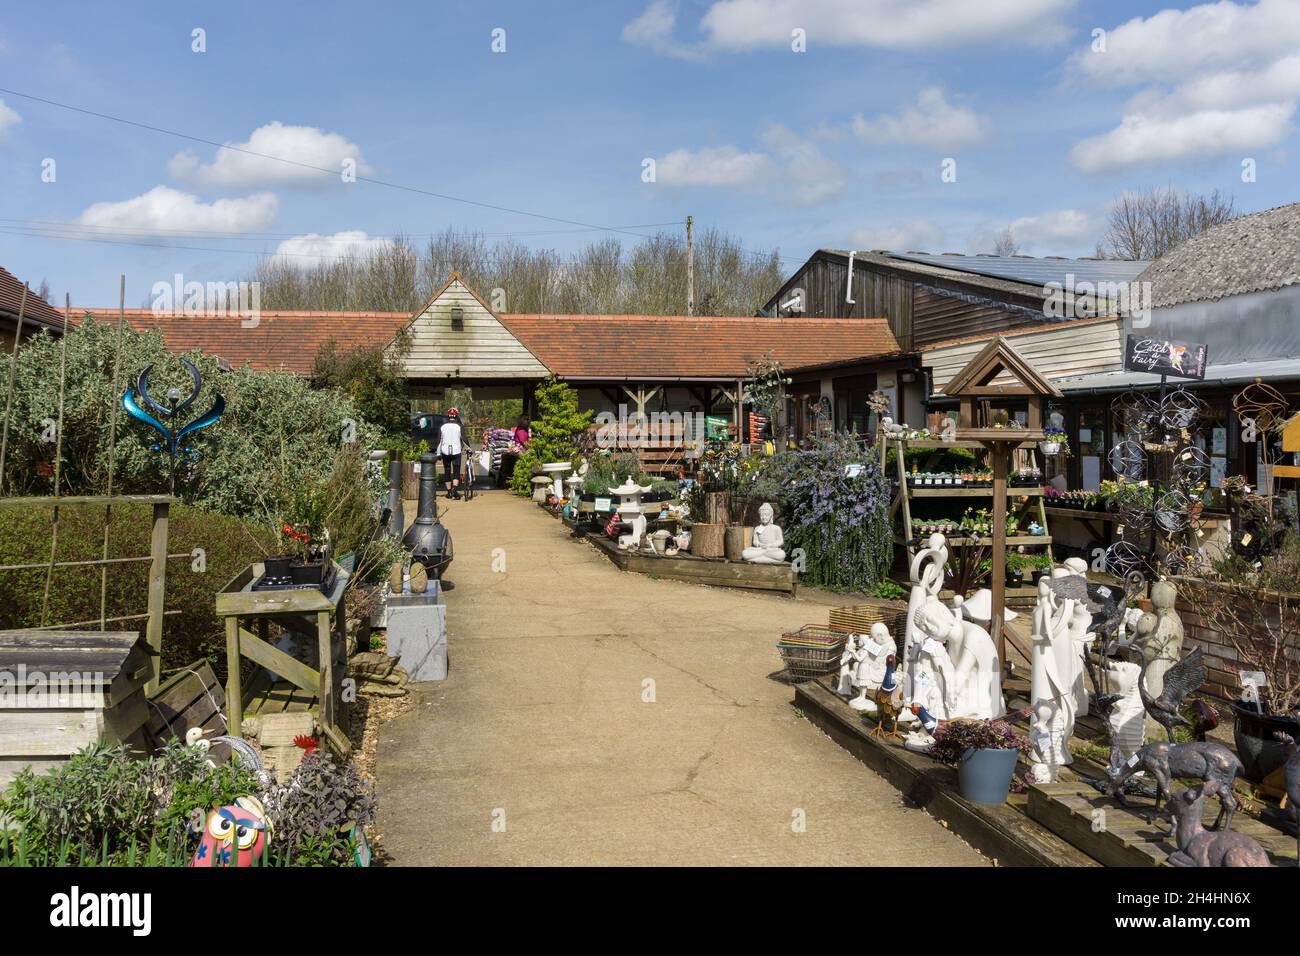 Il National Herb Center, un centro erbario e giardino, Warmington, Warwickshire, Regno Unito Foto Stock